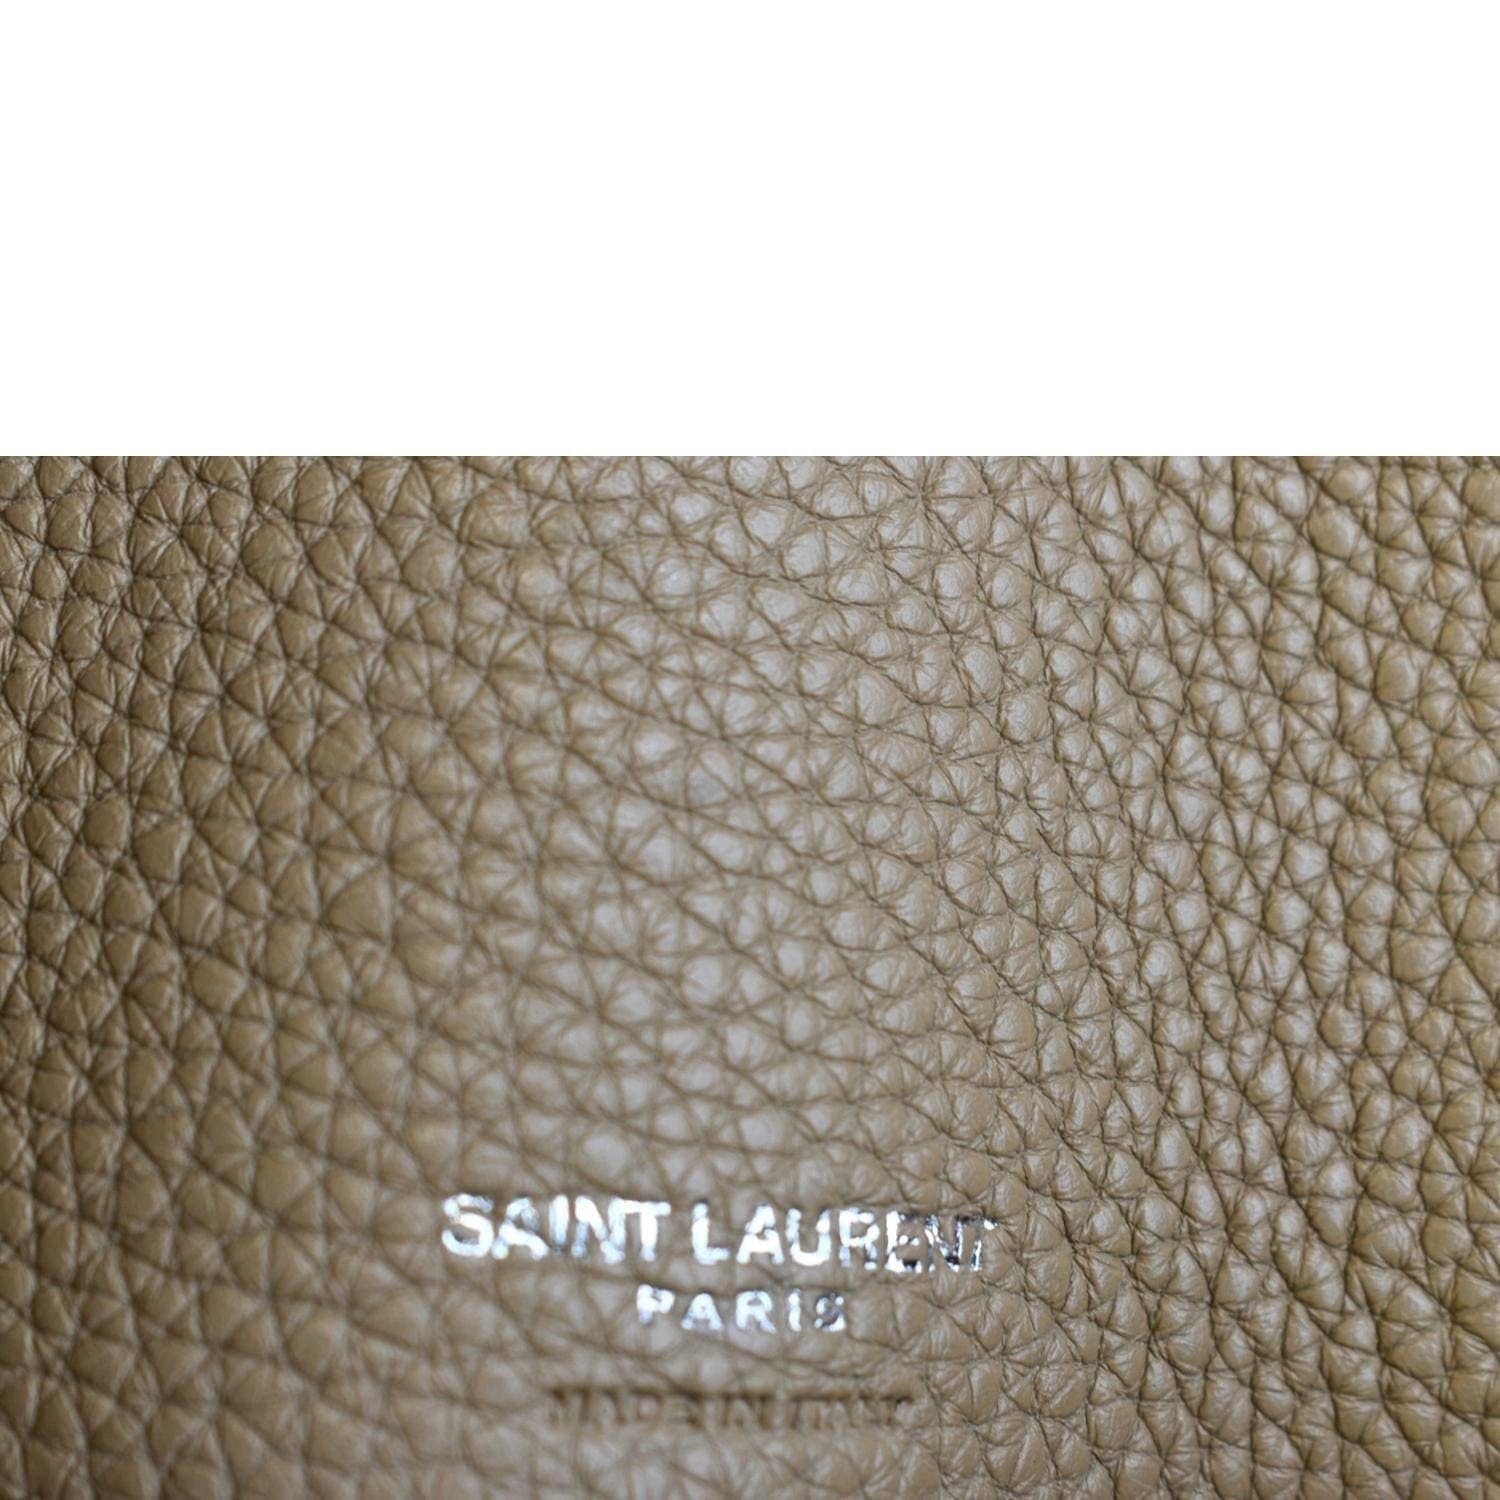 SAINT LAURENT: Sac De Jour bag in grain de poudre leather - Beige